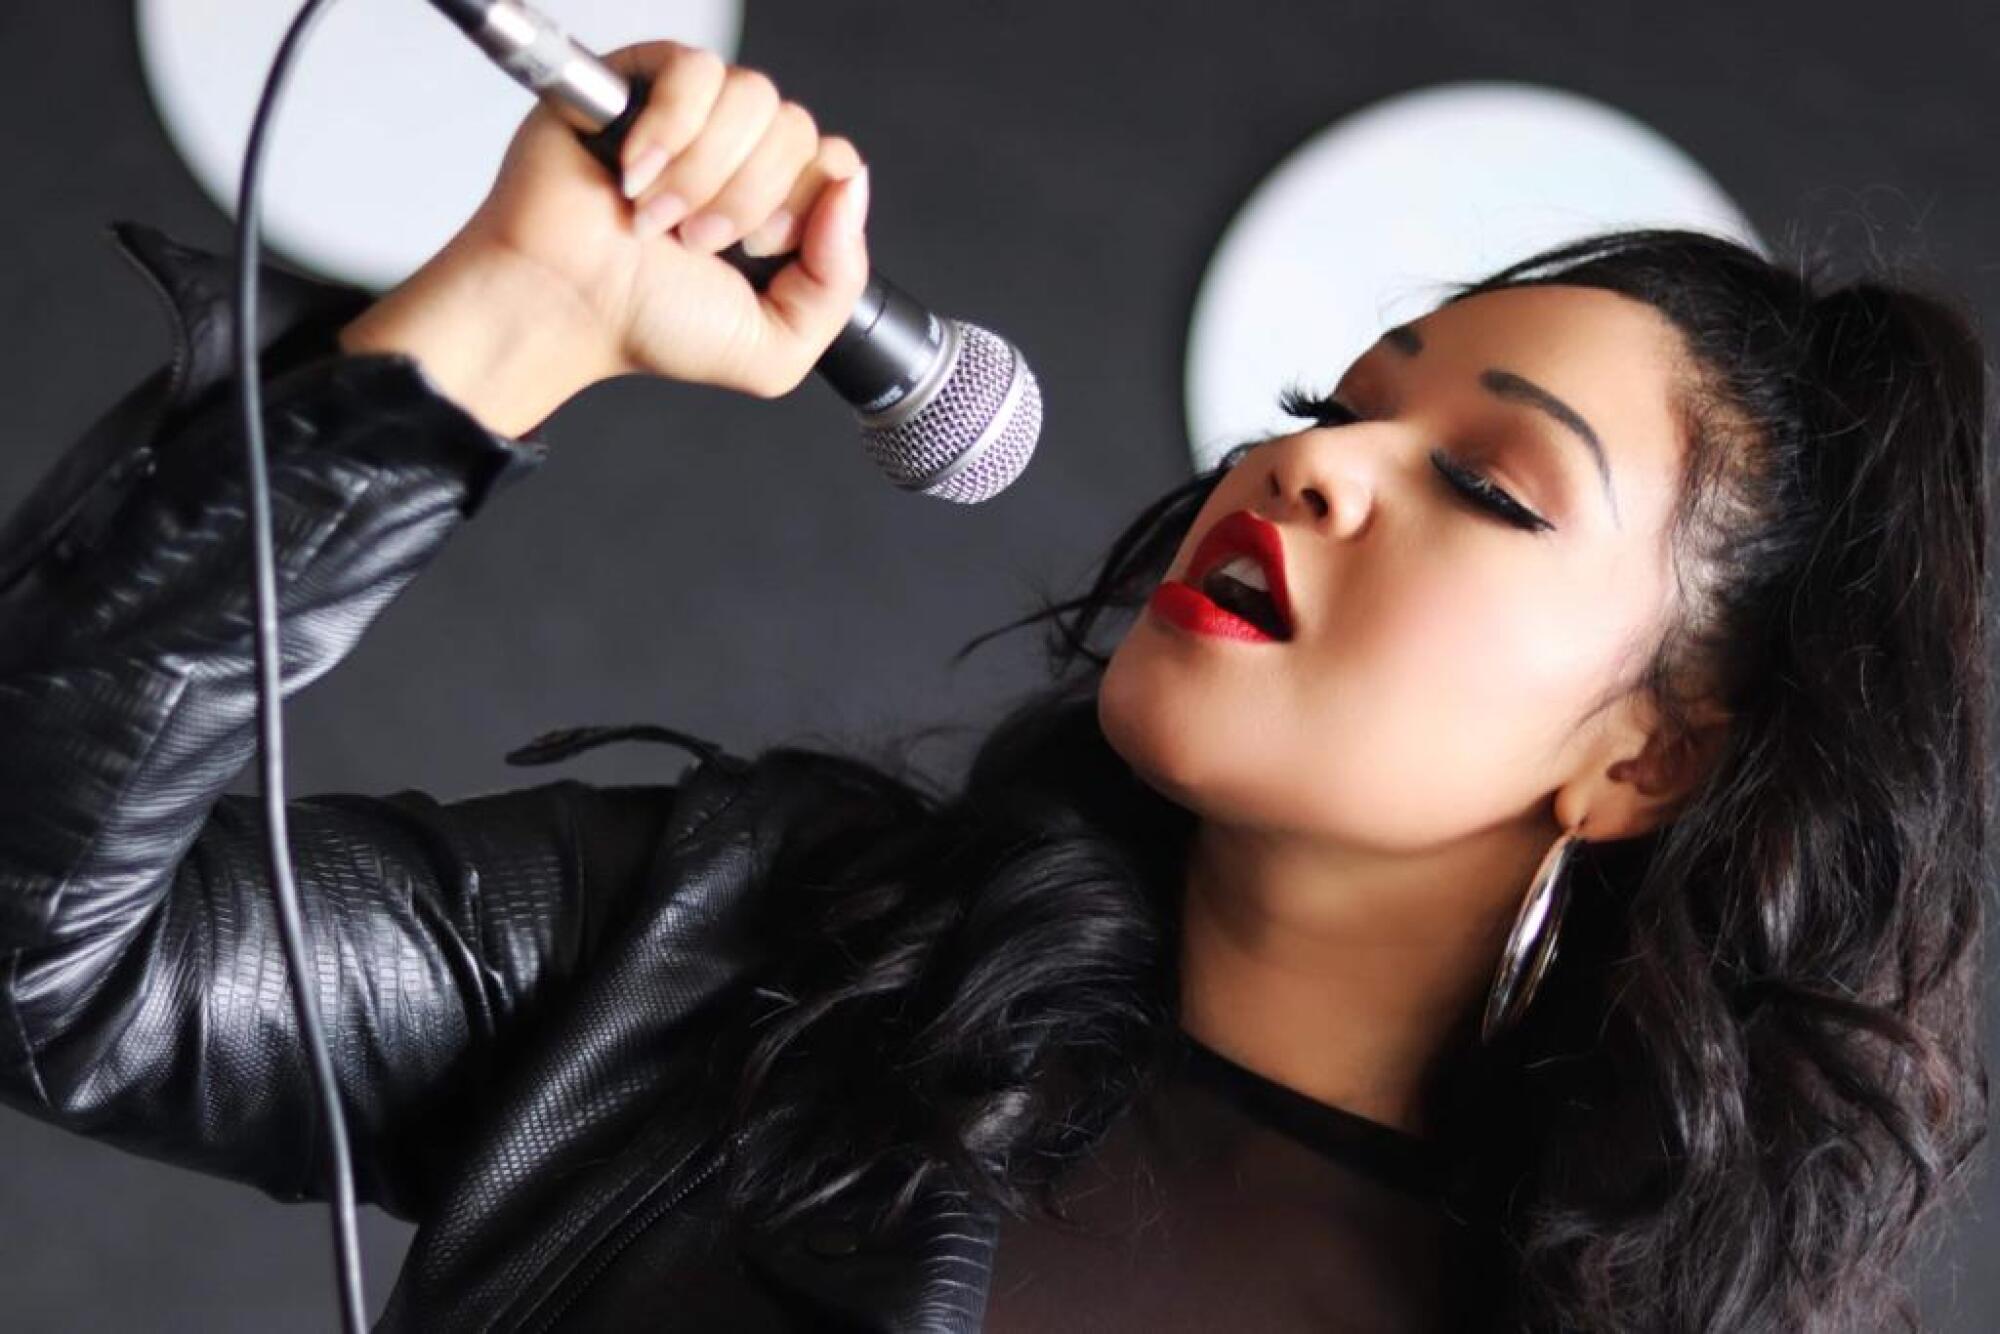 Tina Aldana, cantante tejana, le rinde tributo a Selena Quintanilla en los escenarios desde hace varios años.